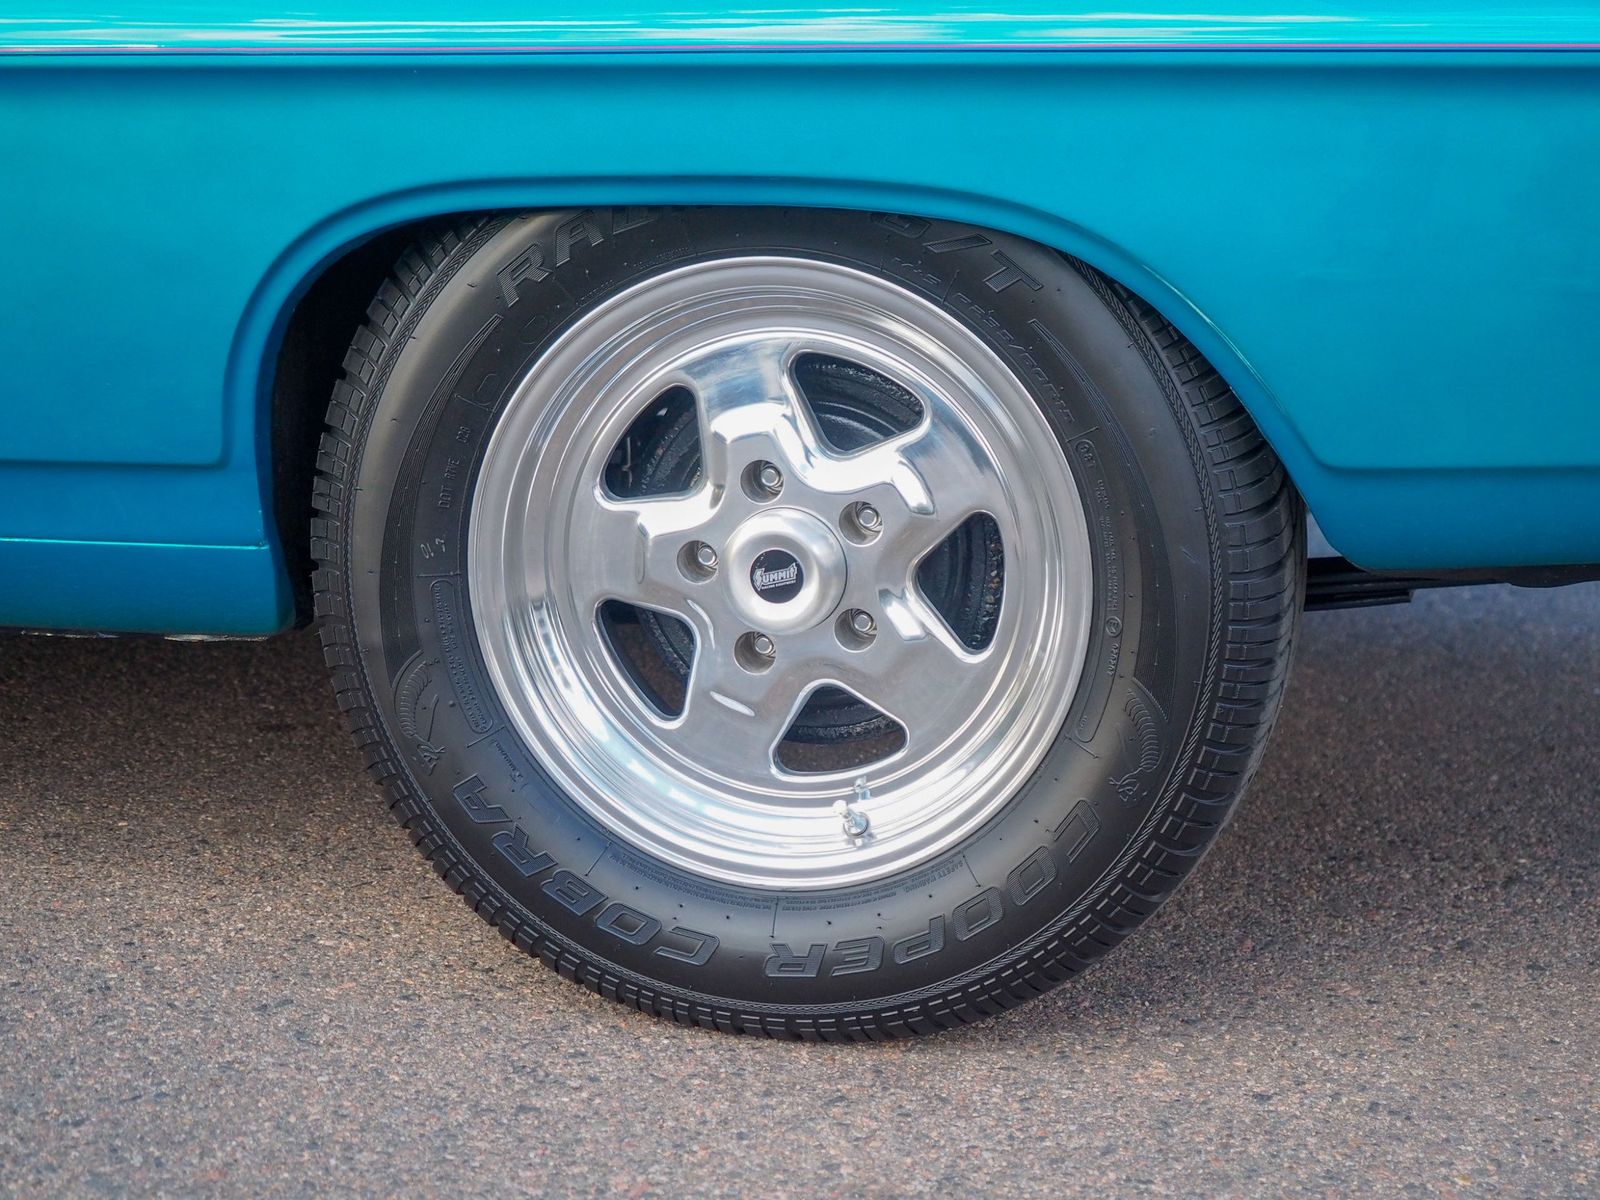 1967 Chevrolet Nova 29